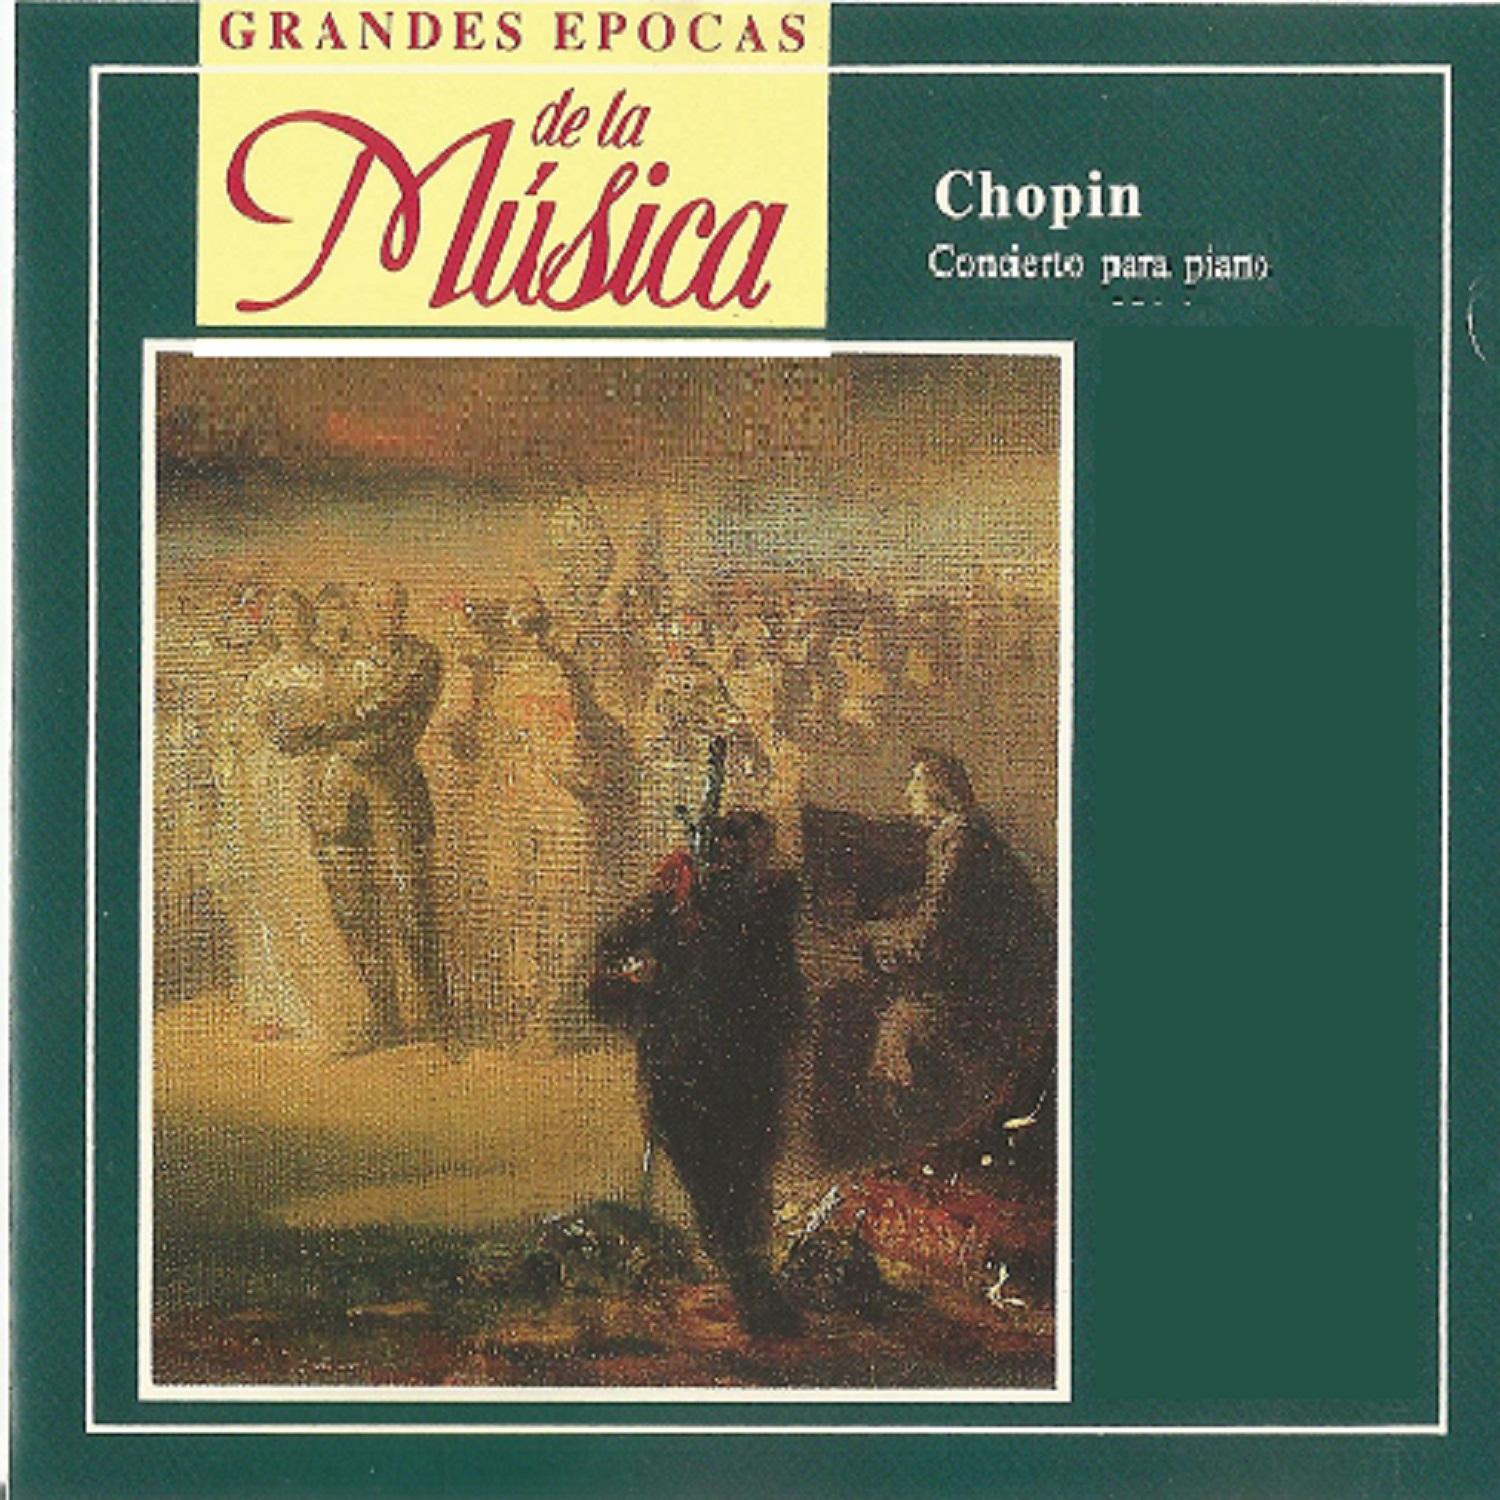 Grandes Epocas de la Mu sica, Chopin, Concierto para piano